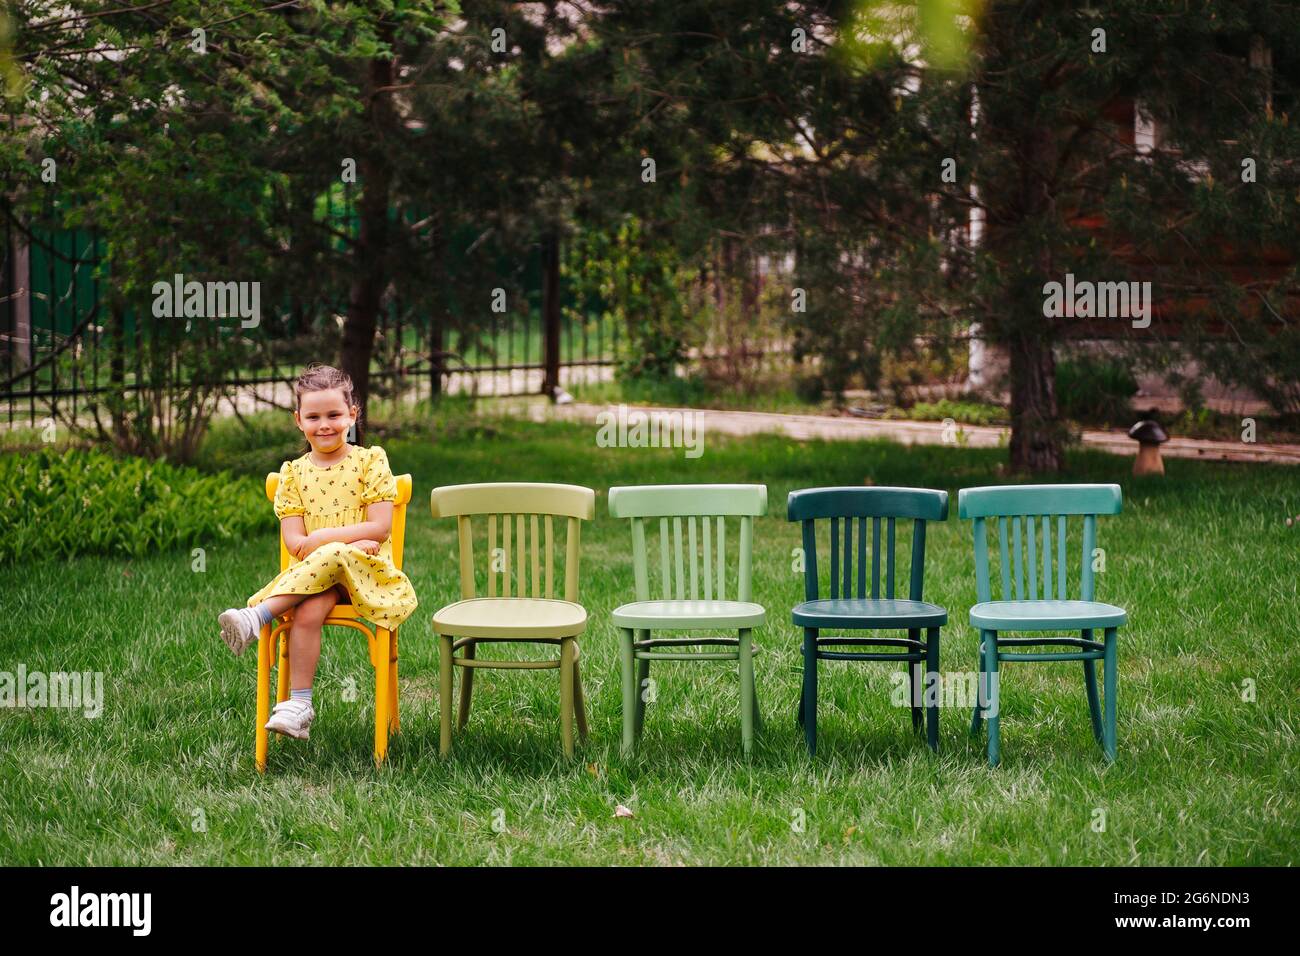 Una chica alegre y riendo con un vestido amarillo se sienta en sillas pintadas multicolores vienesas esperando a un amigo para una fiesta infantil y cumpleaños Foto de stock